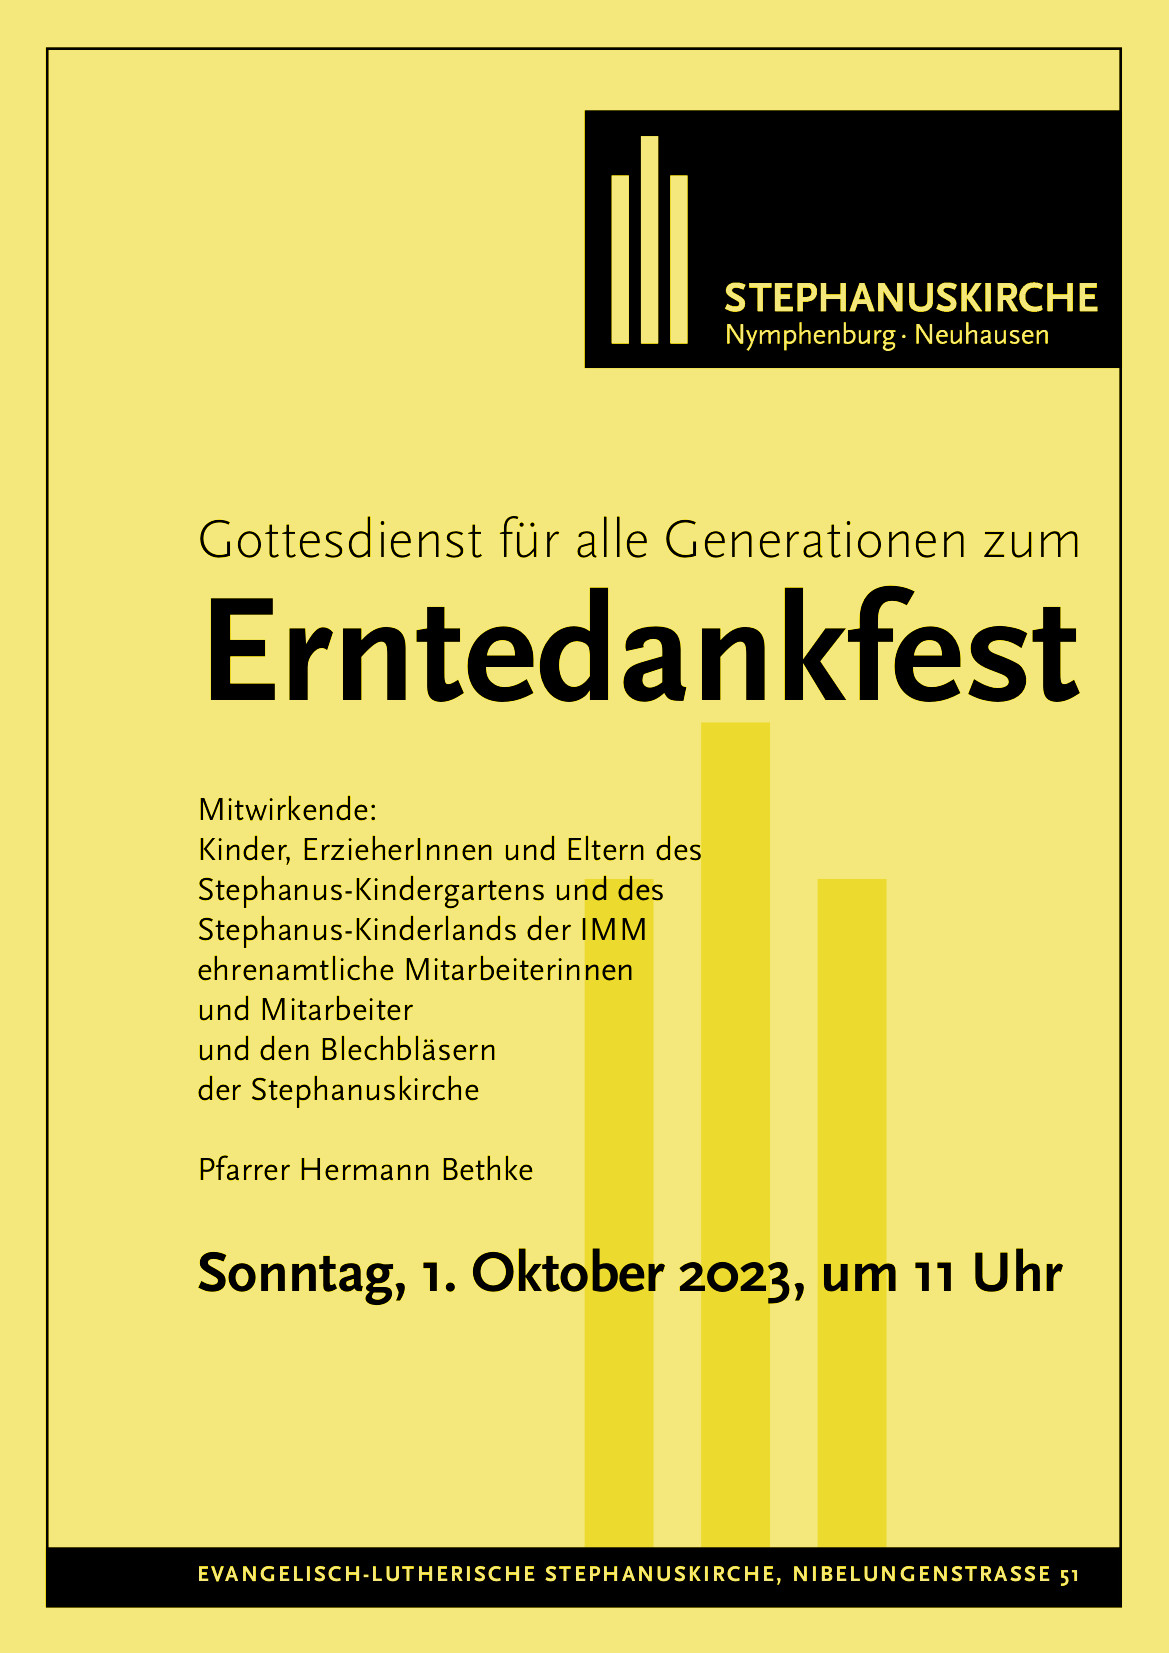 Plakat Erntedank-Gottesdienst 02.10.2023